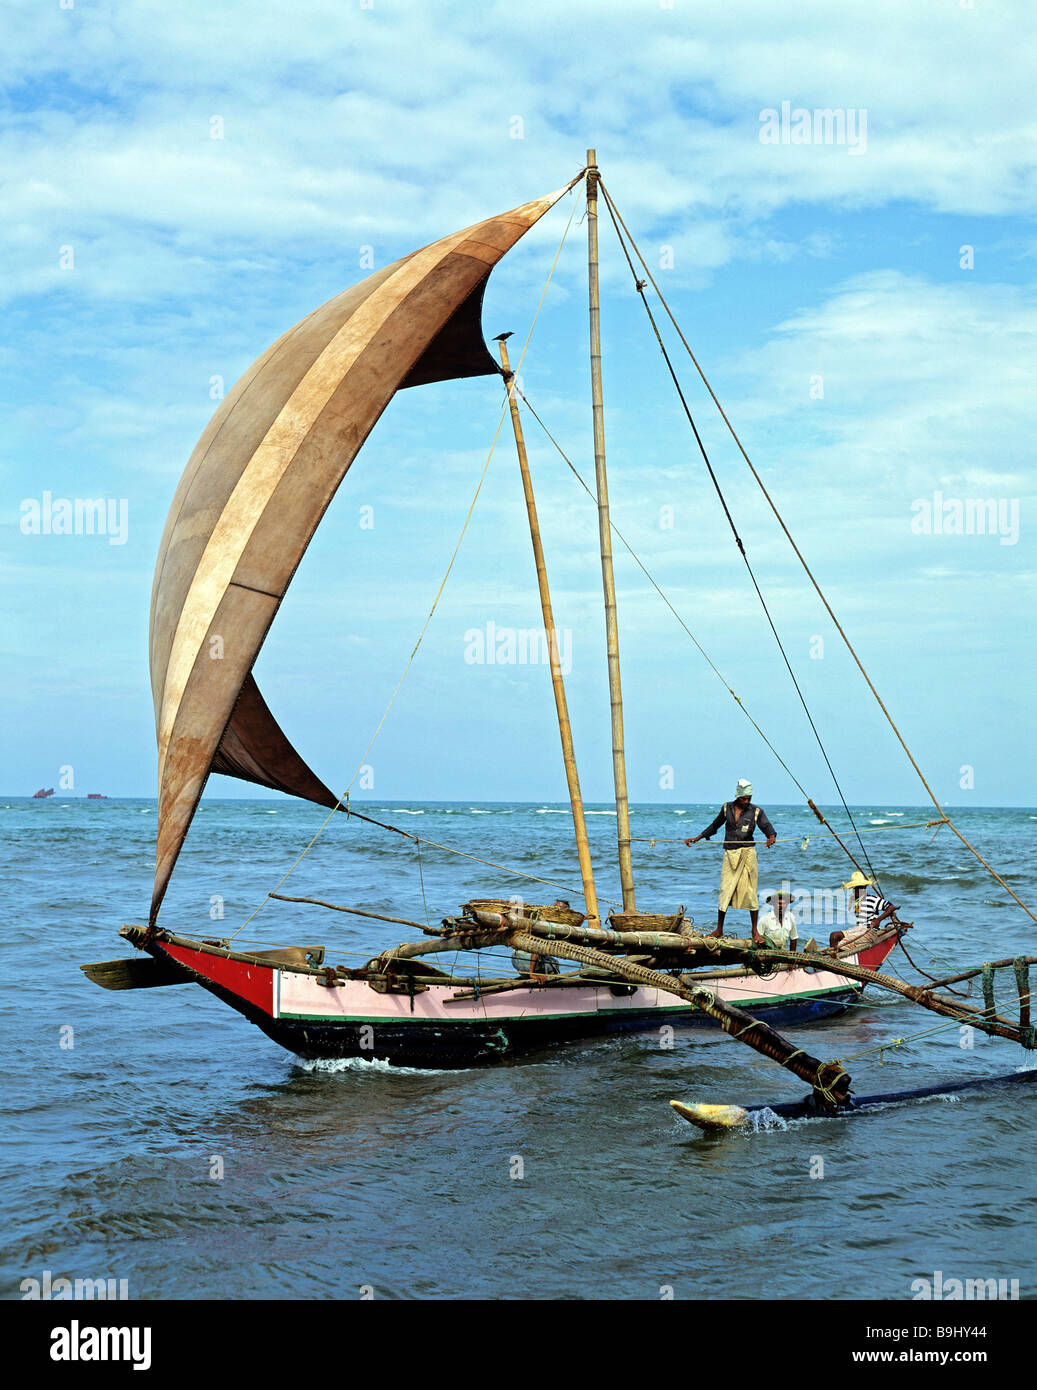 Bateau de pêche, voiles, les pêcheurs, de l'Océan Indien, Negombo, Sri Lanka Banque D'Images